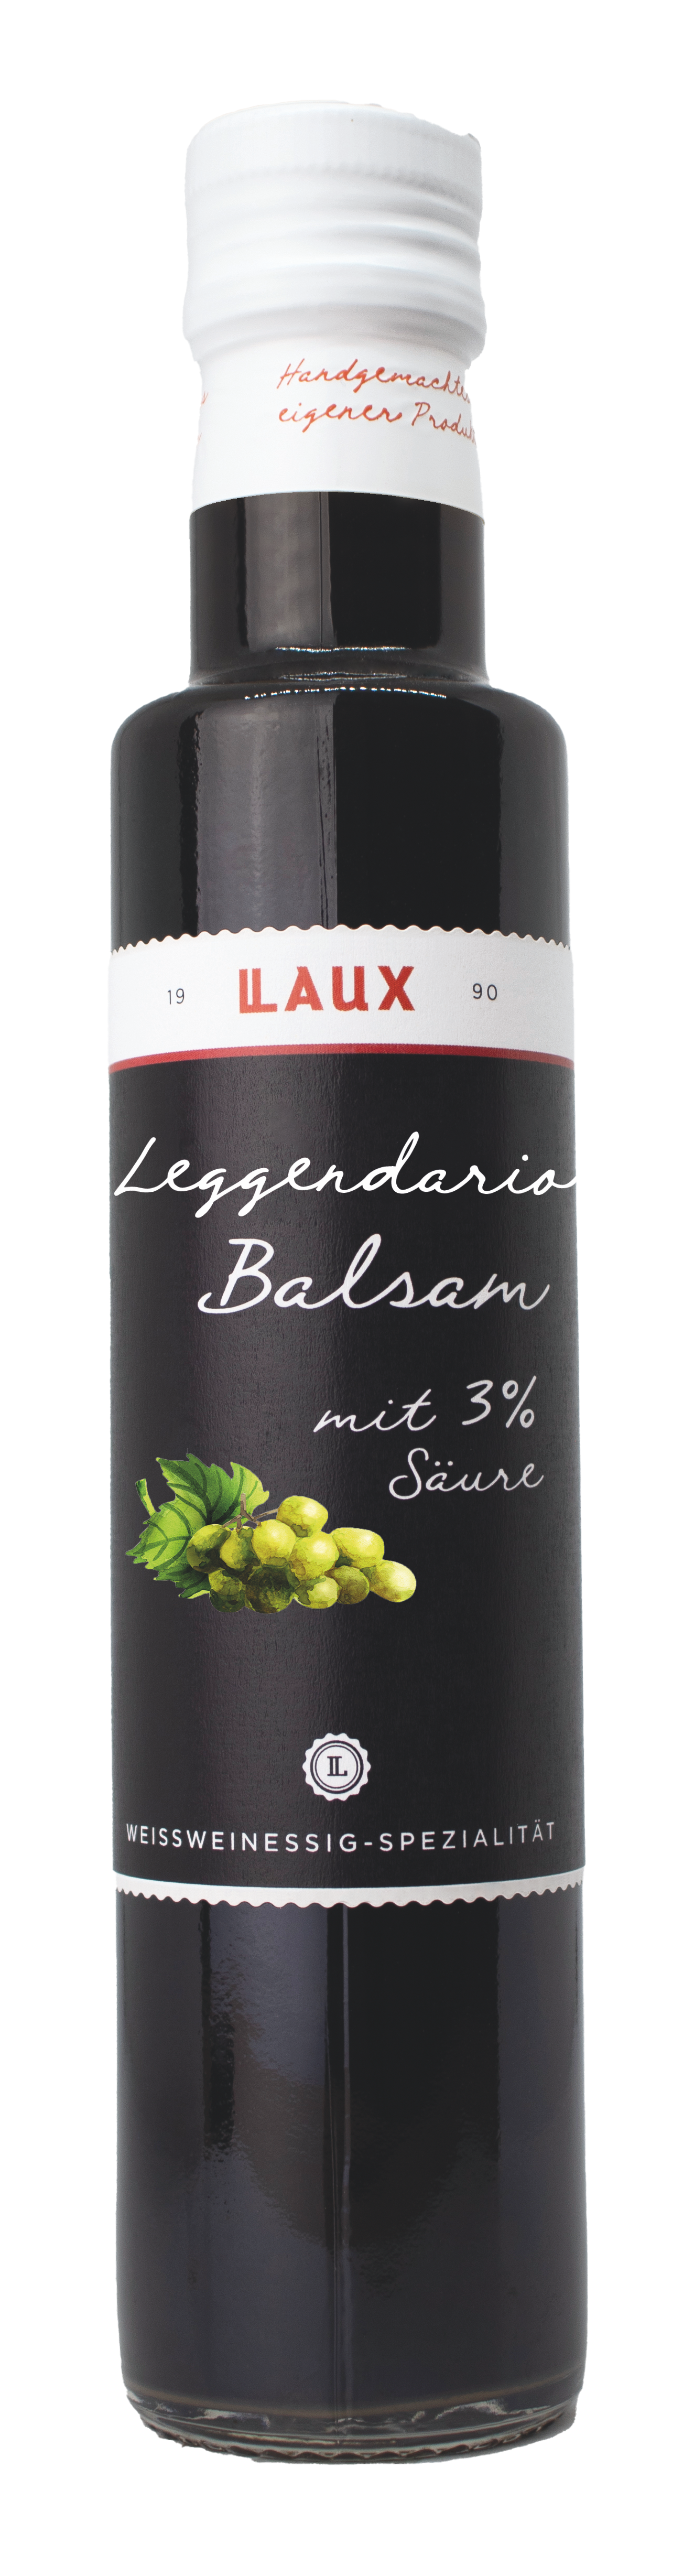 Balsam Essig Leggendario - 250ml Flasche